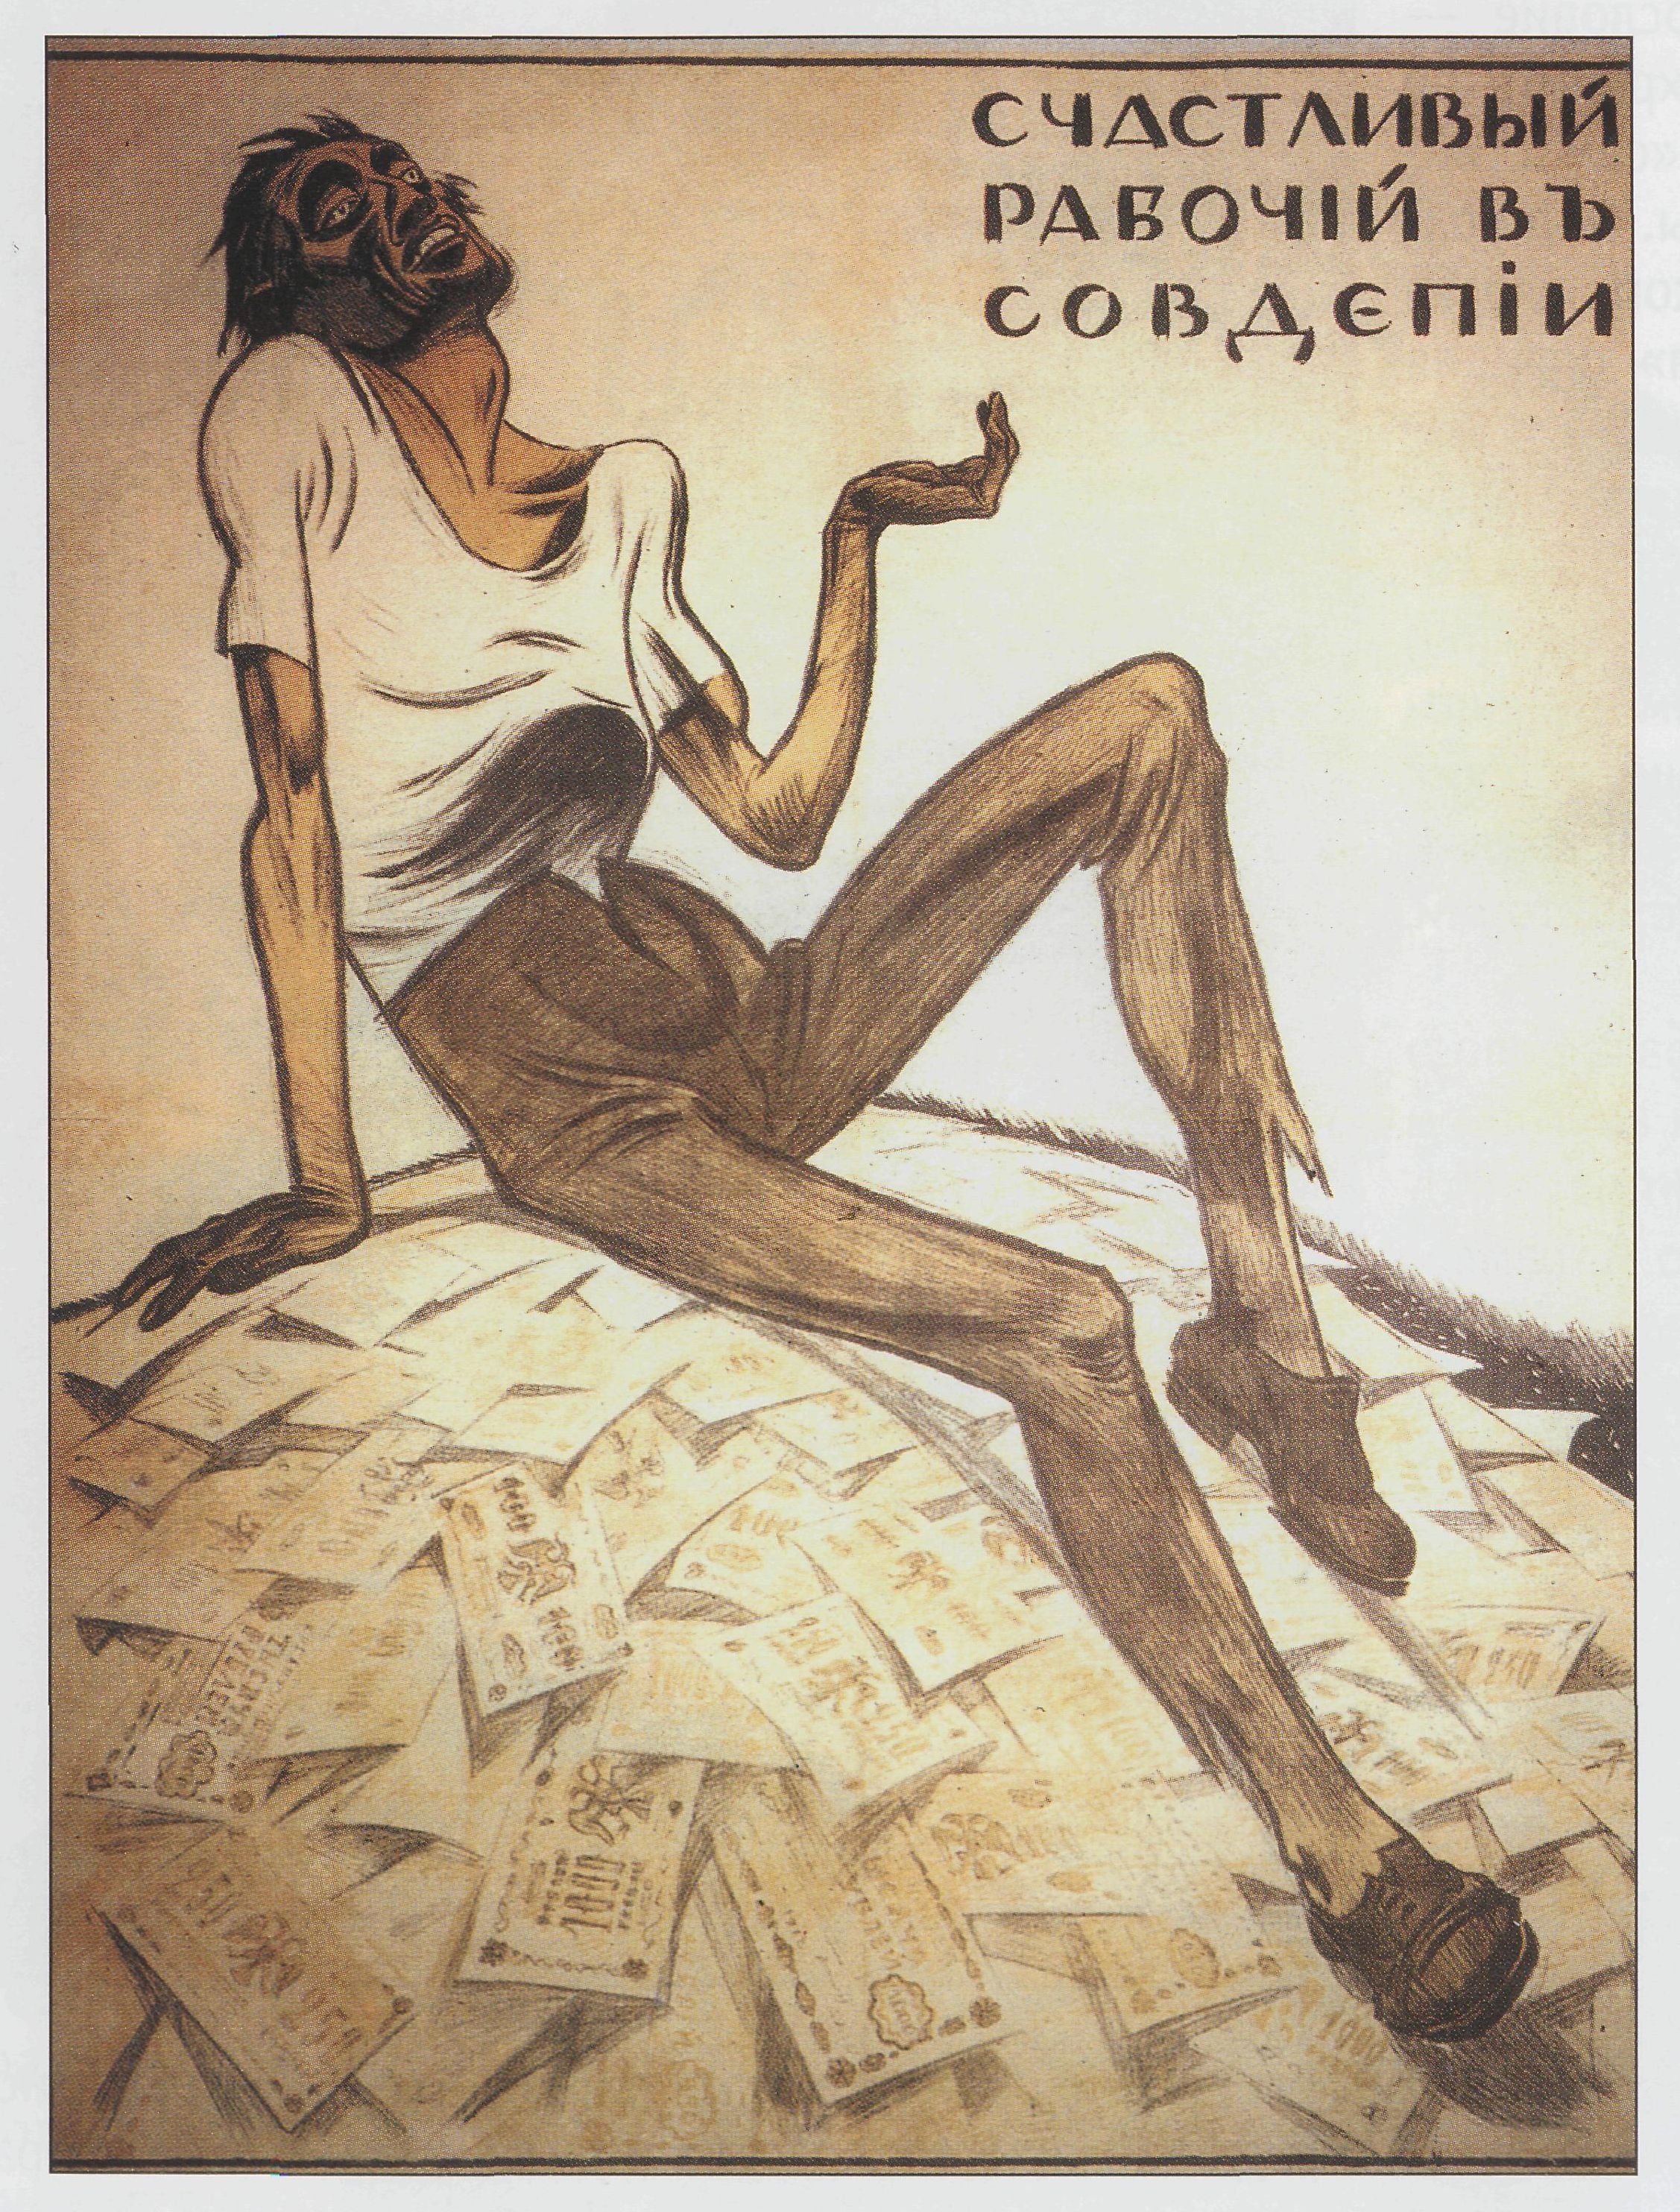 Рисунок иллюстрация к лозунгу. Советские плакаты. Советские плакаты современные. Счастливый рабочий в совдепии. Совдепия плакат.